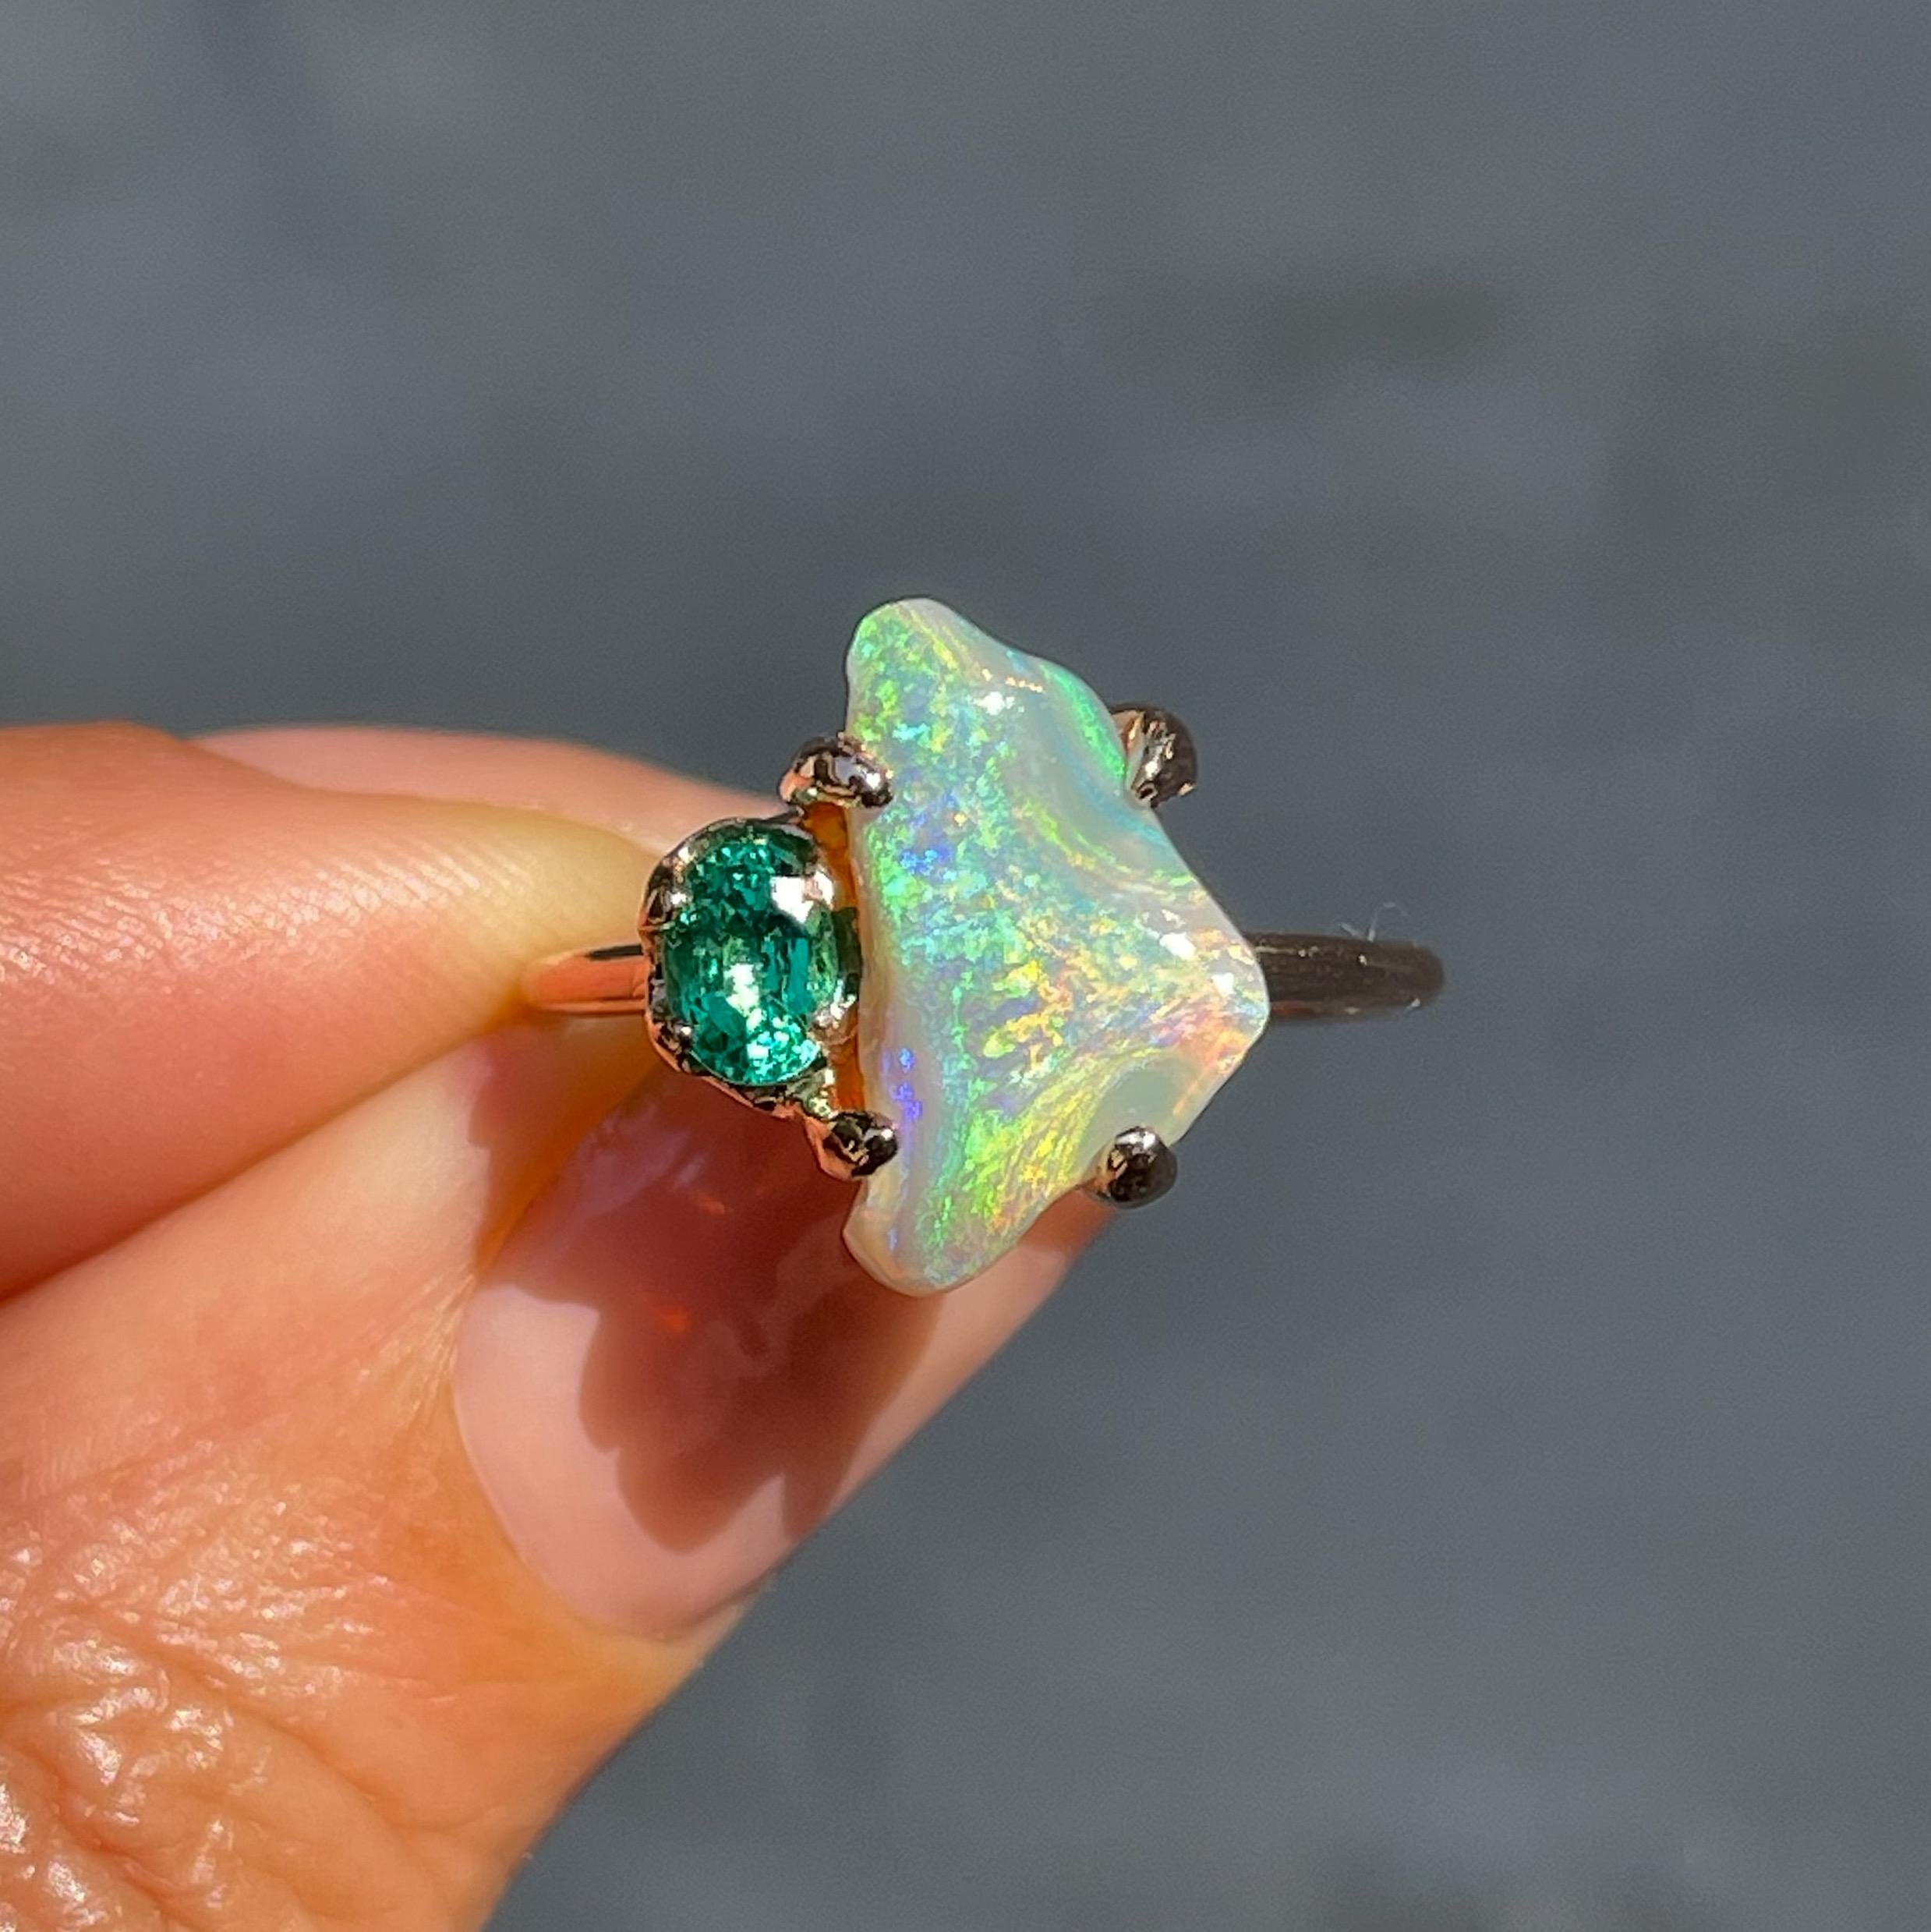 Der Schwarze Opal in diesem Ring aus Opal und Smaragd besticht durch seine geschmeidige, blühende Farbe. Der Lightning Ridge Opal ist mit einem ovalen Smaragd in Roségold gefasst und strahlt ein Ethos der Erneuerung aus. Der chromatische Fluss